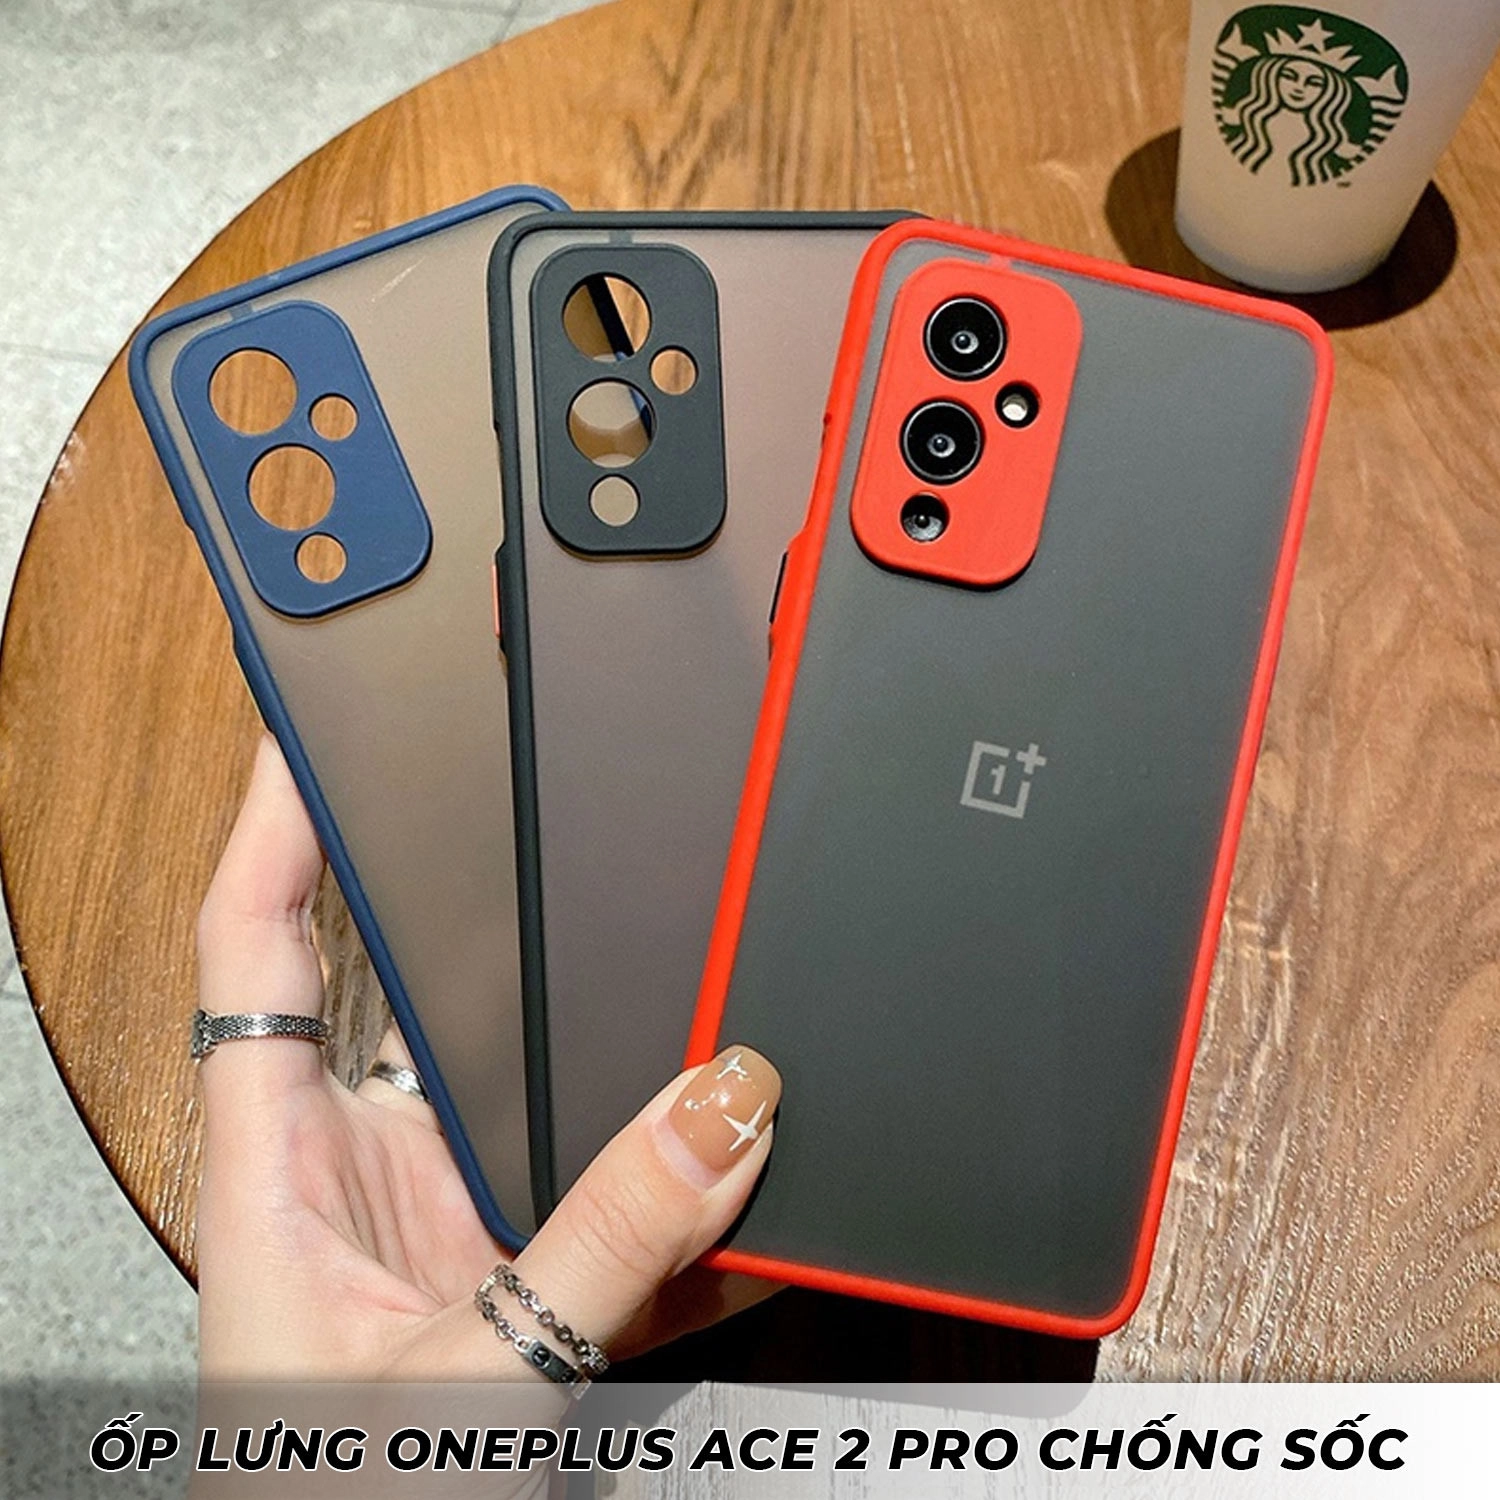 op-lung-oneplus-ace-2-pro-chongsoc